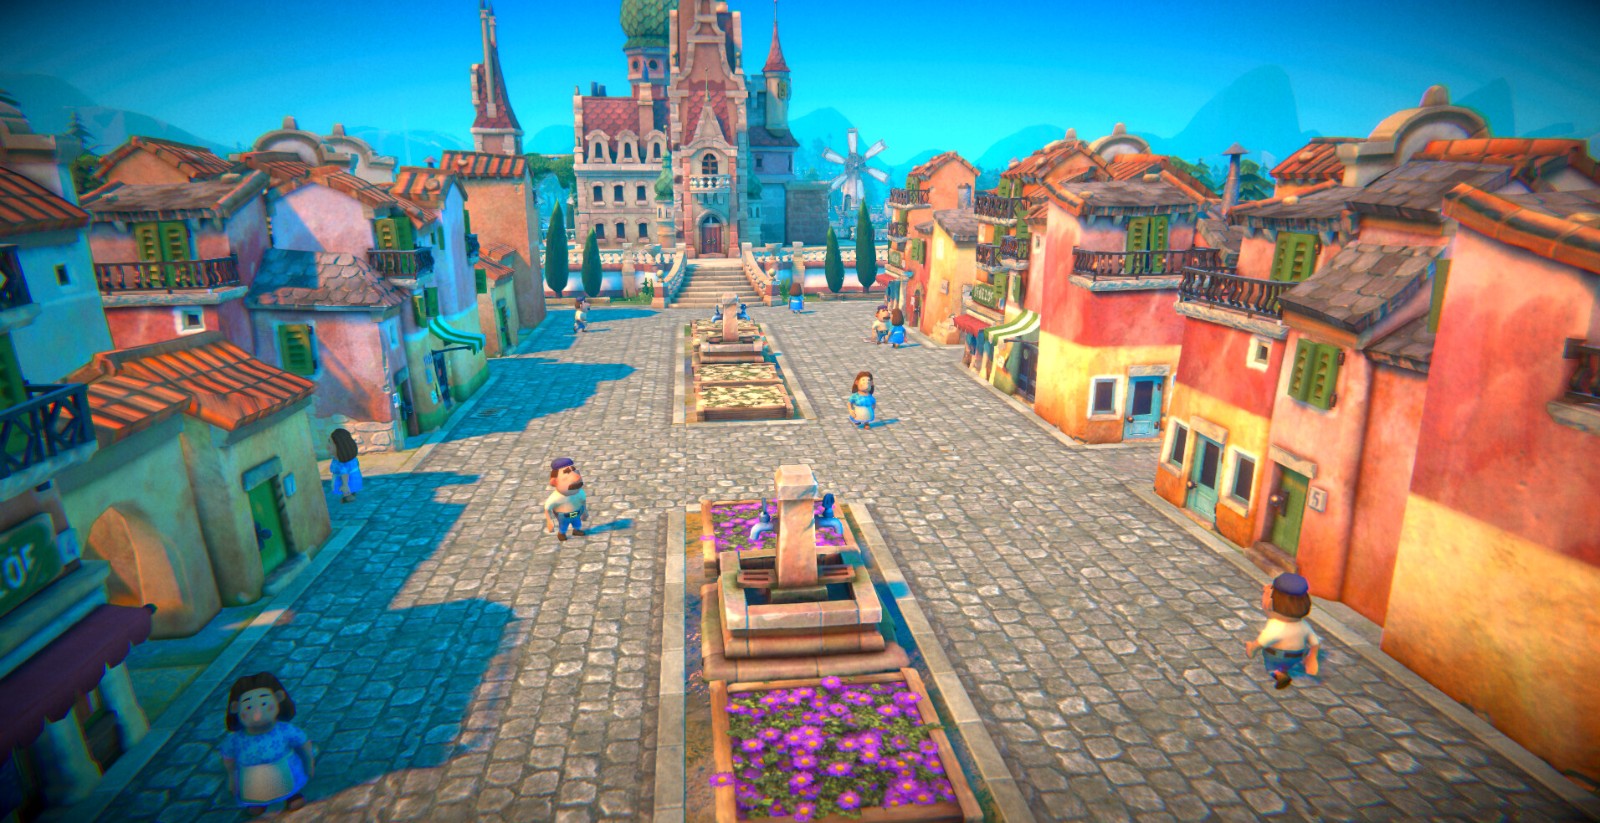 城市营造游戏《寓言之地》公布 登陆PC、支持中文